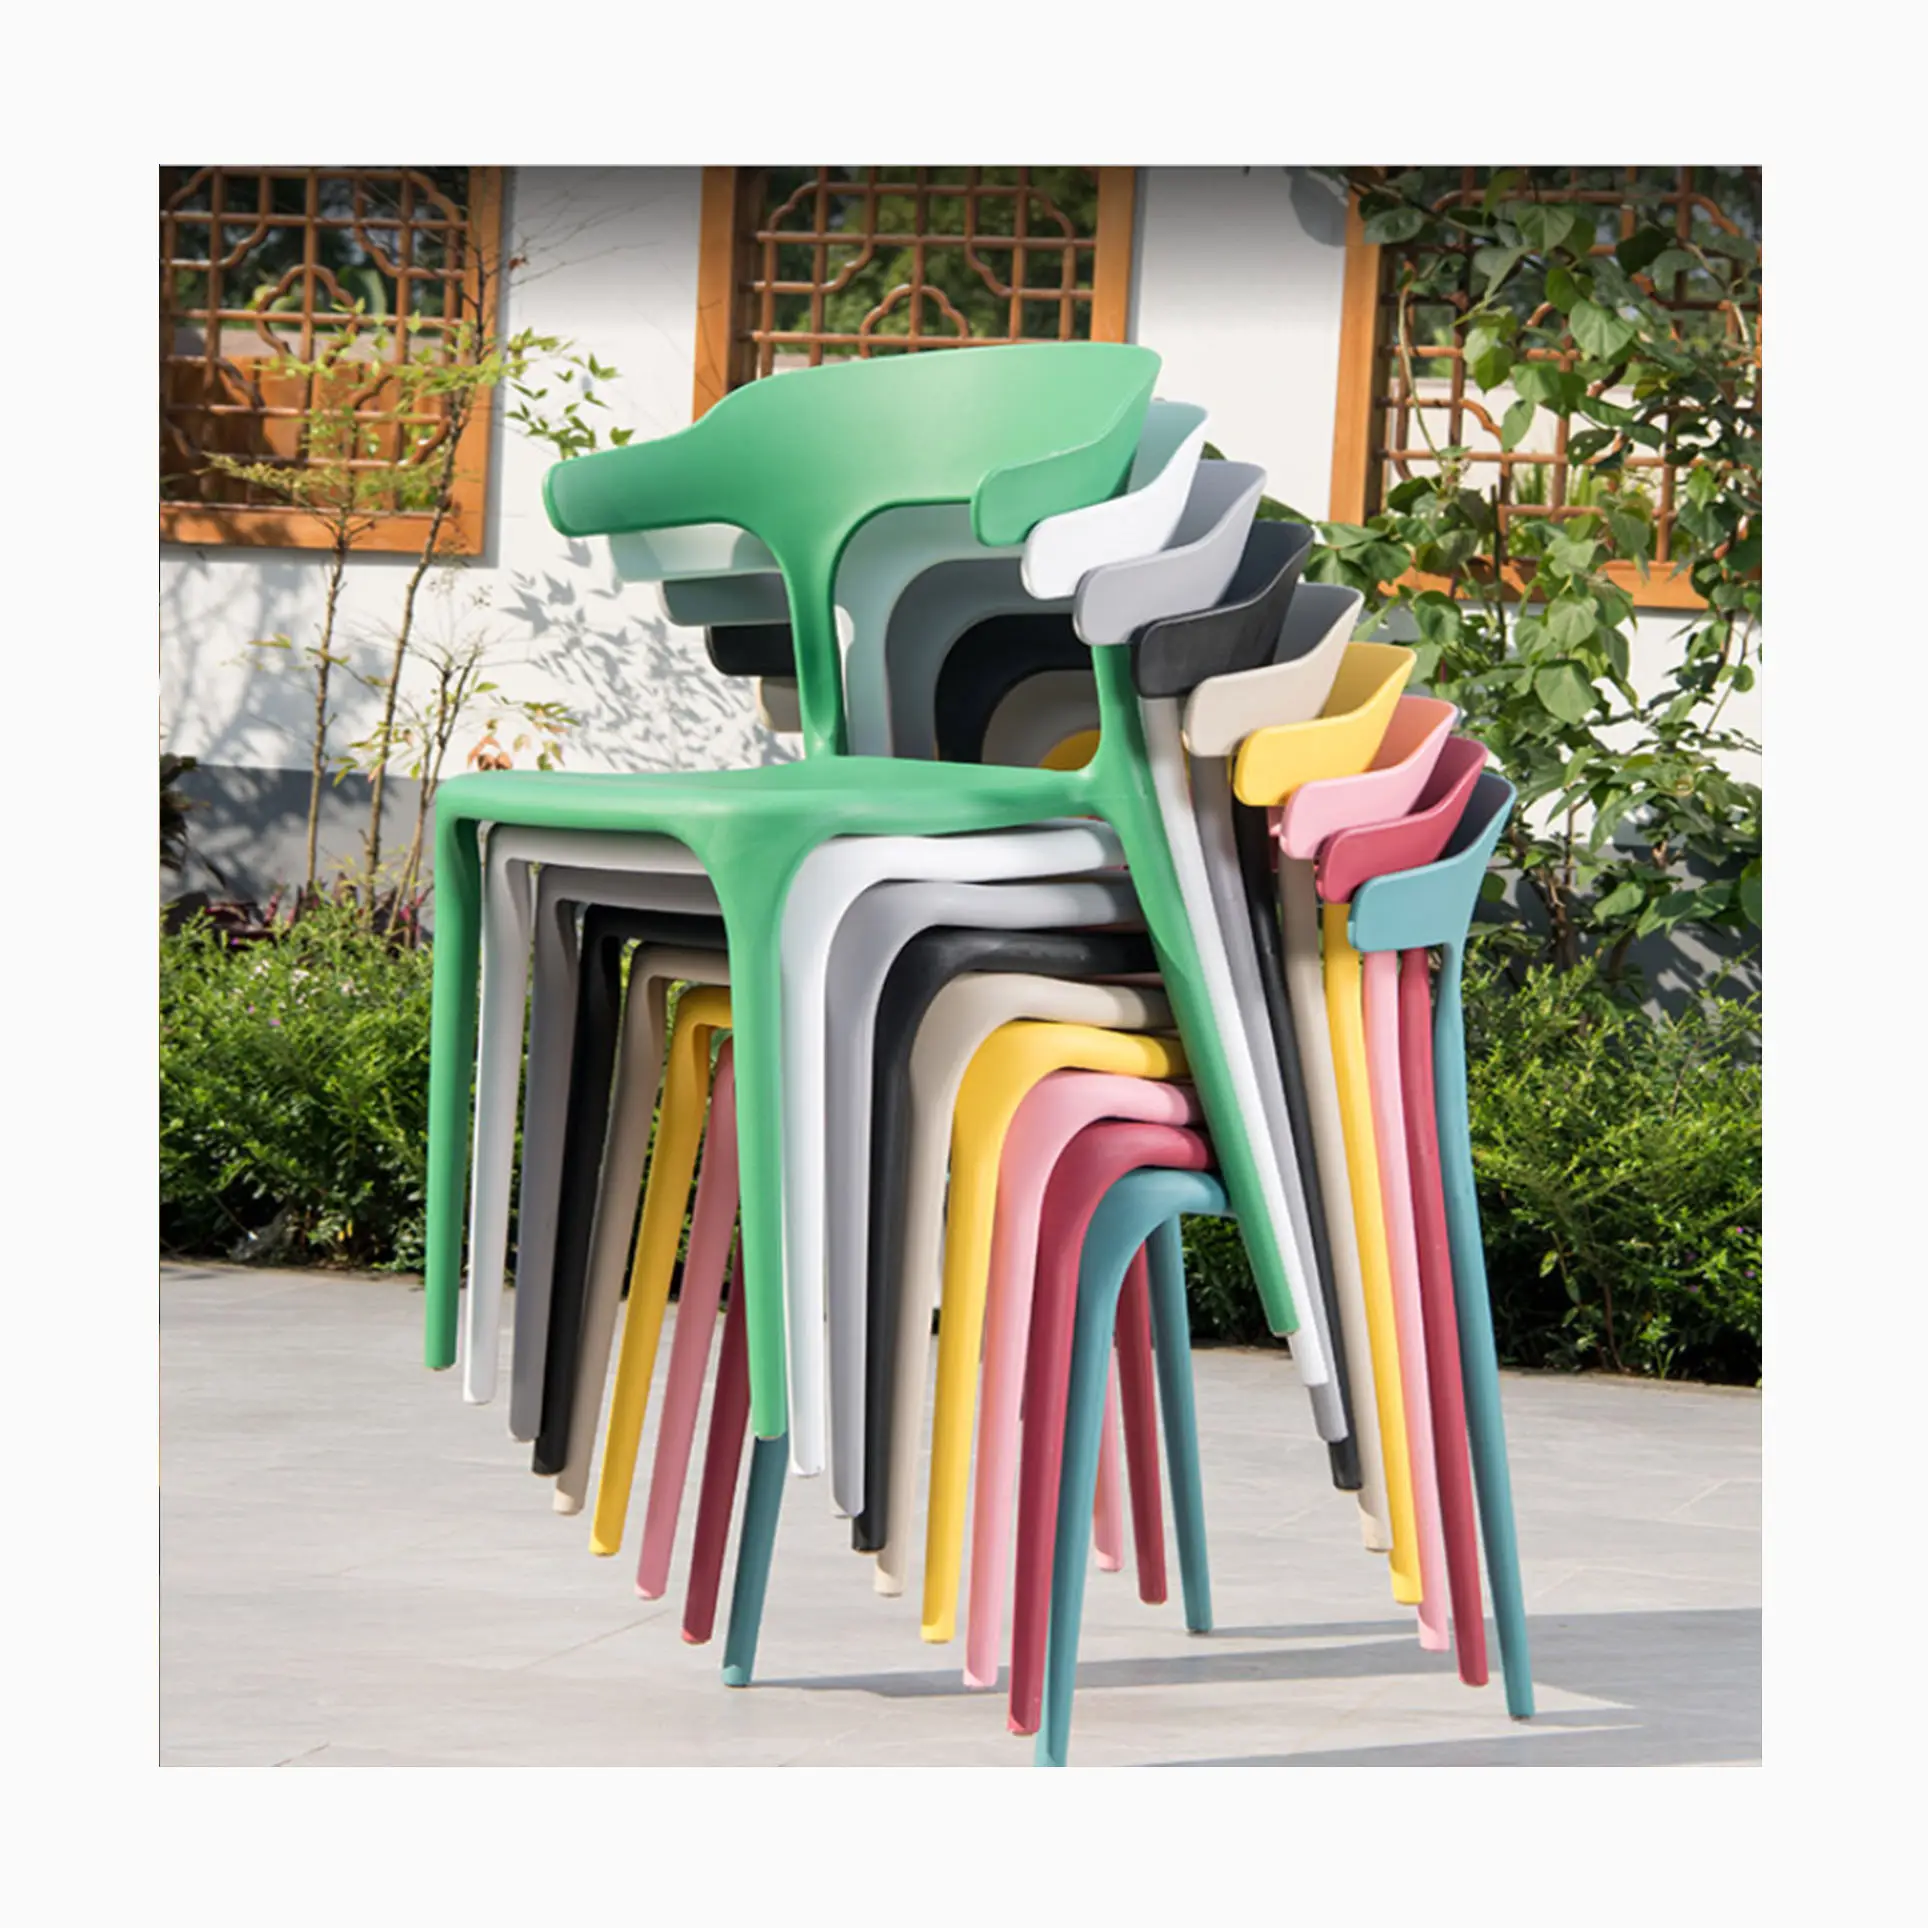 [MOJIA] แตรที่มีสีสันเก้าอี้พลาสติกวางซ้อนกันได้งานปาร์ตี้สวนกลางแจ้งเก้าอี้ร้านกาแฟ 9 สี A-mazon เก้าอี้ขายร้อน